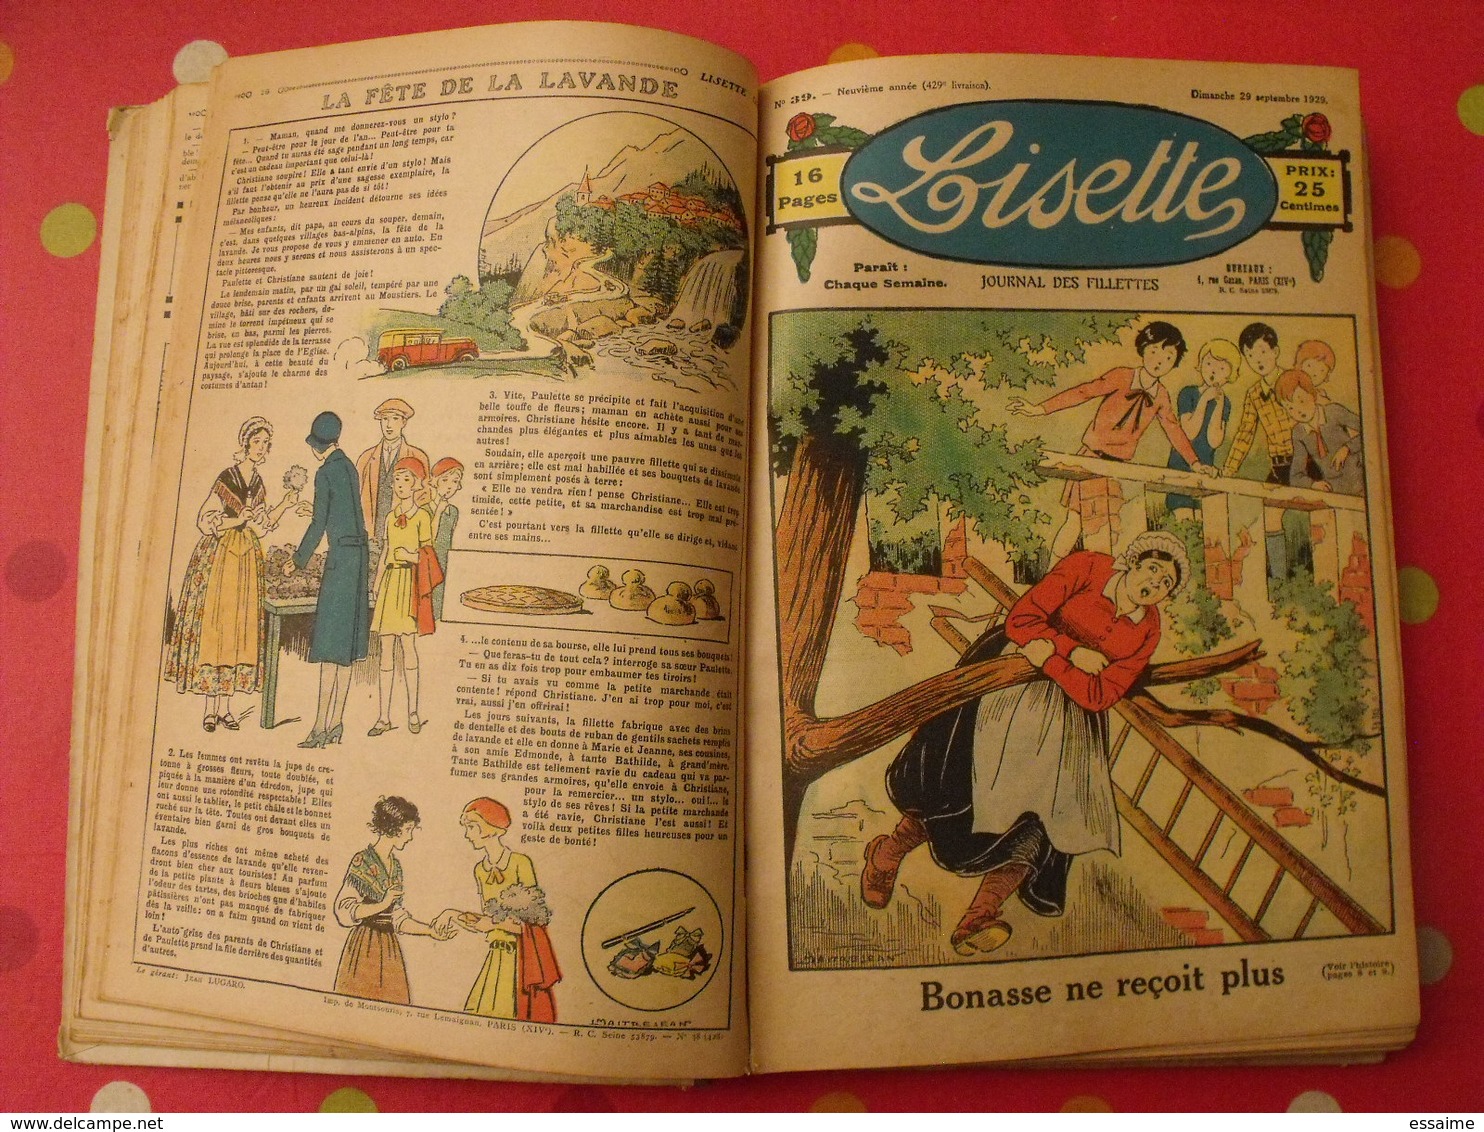 Lisette, album 5 V. 1929-1930. recueil reliure. le rallic levesque maitrejean cuvillier bourdin